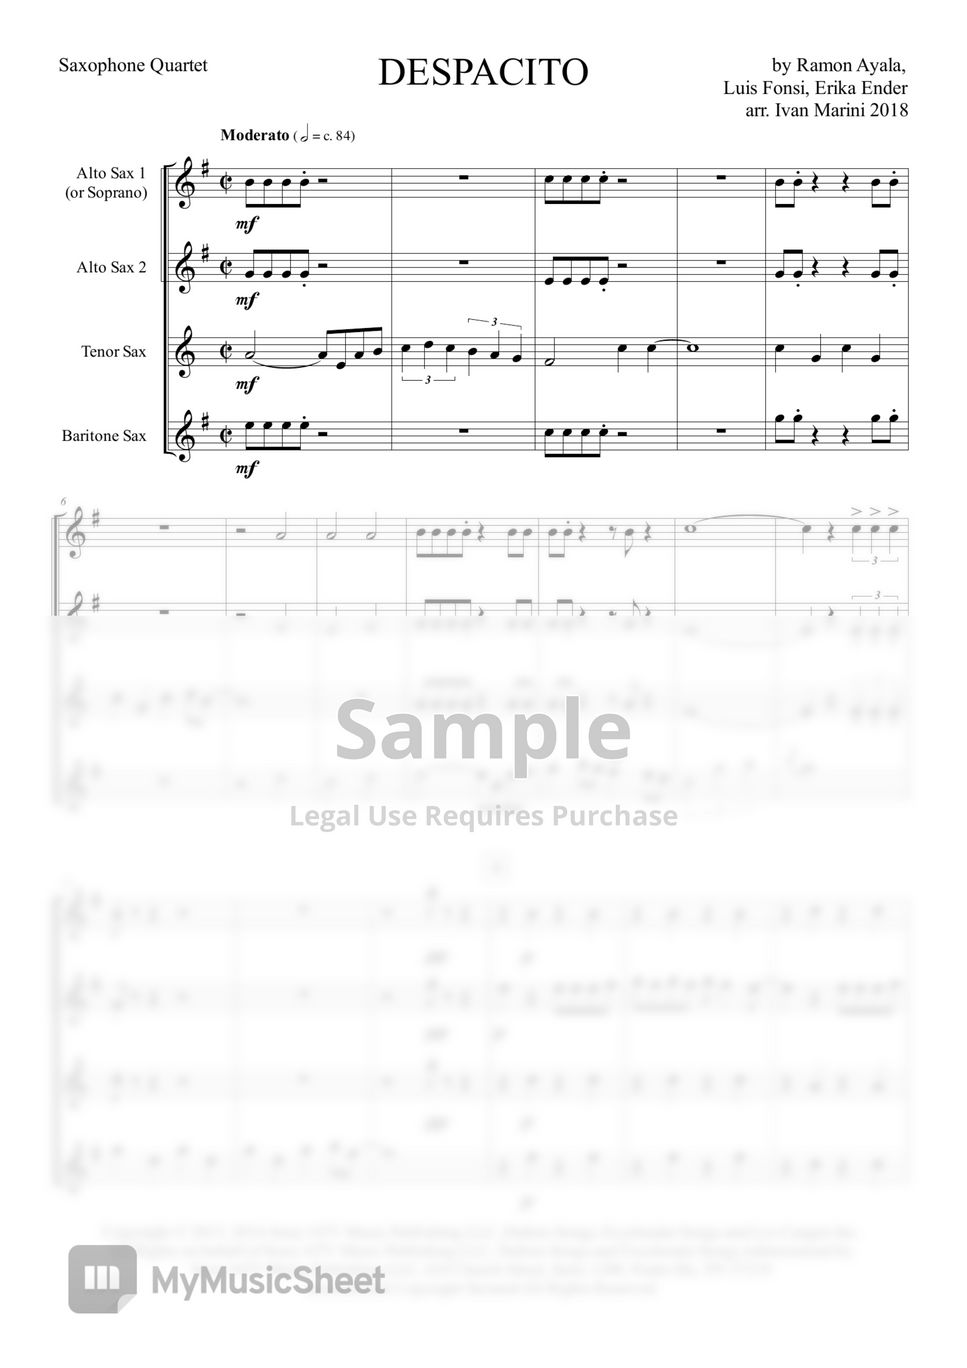 Luis Fonsi - DESPACITO (for Saxophone Quartet) by Ivan Marini